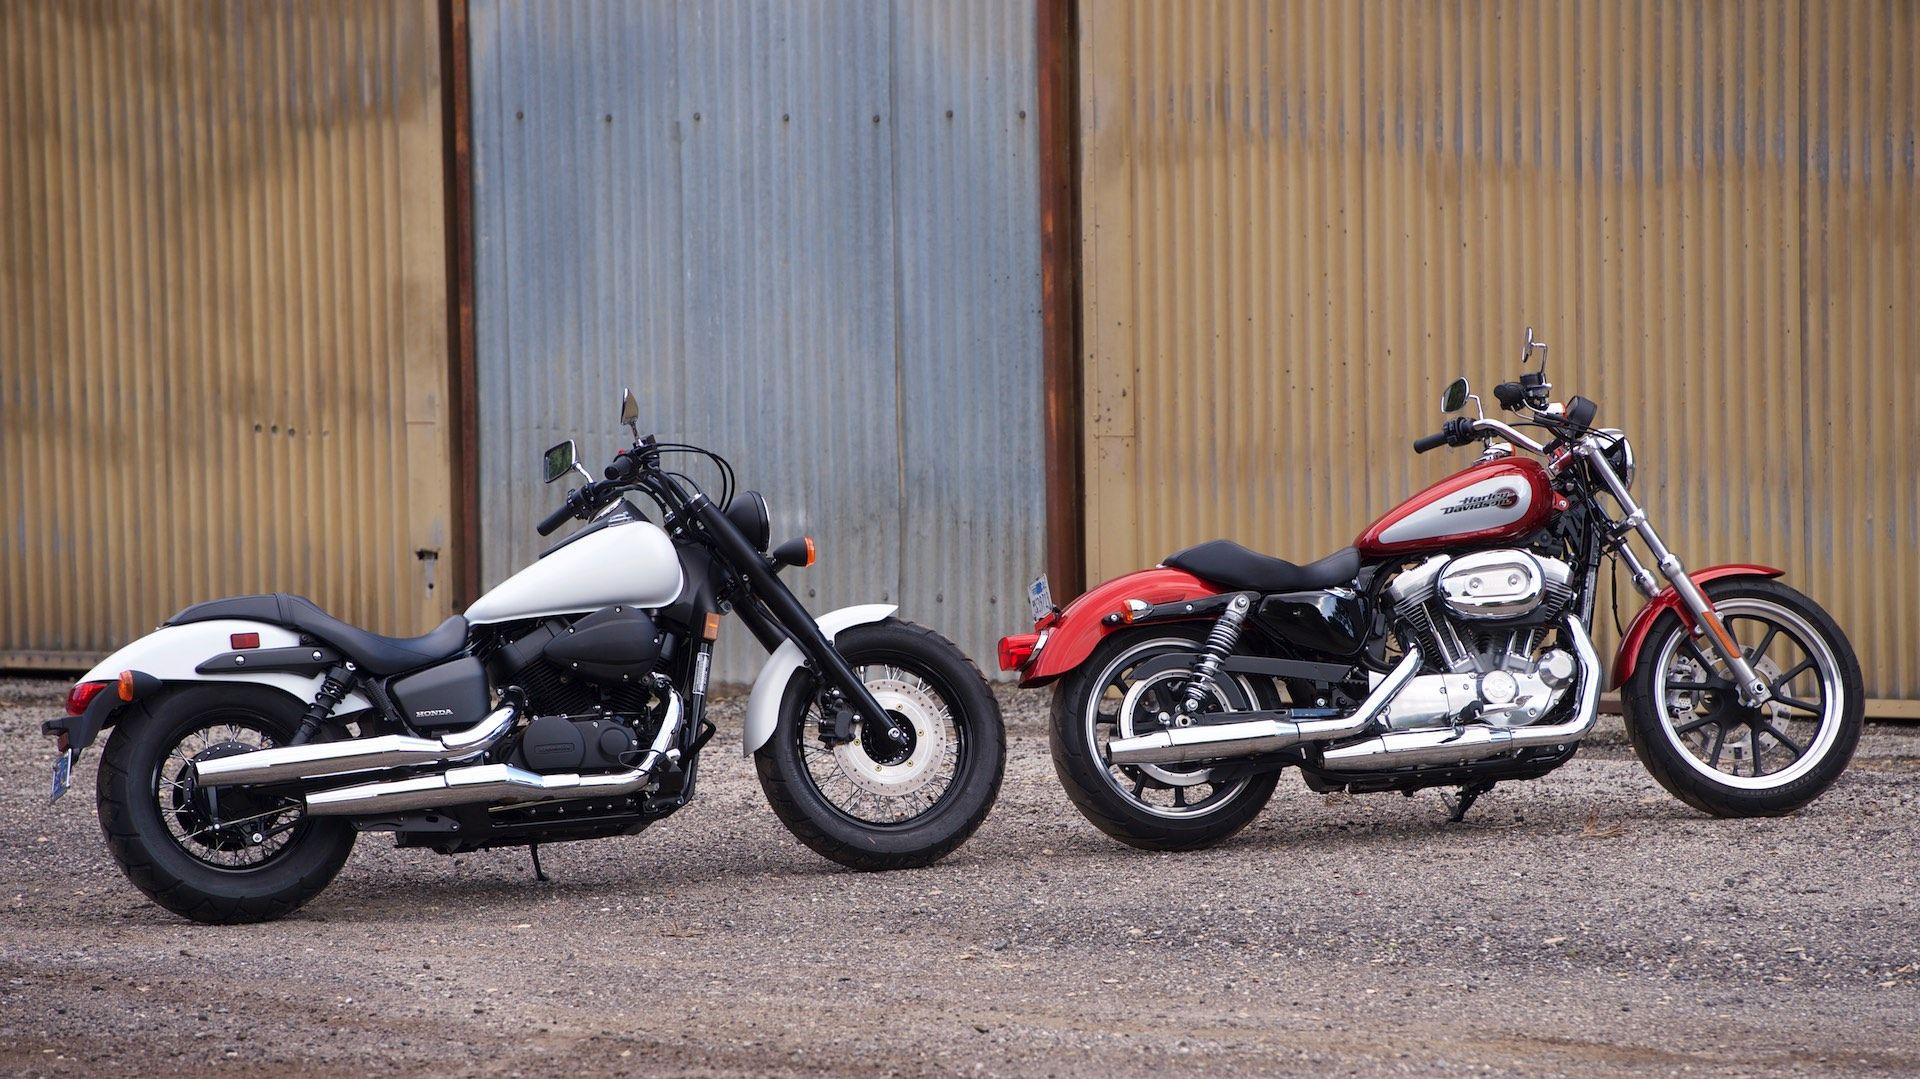 Harley vs Honda Motorcycle